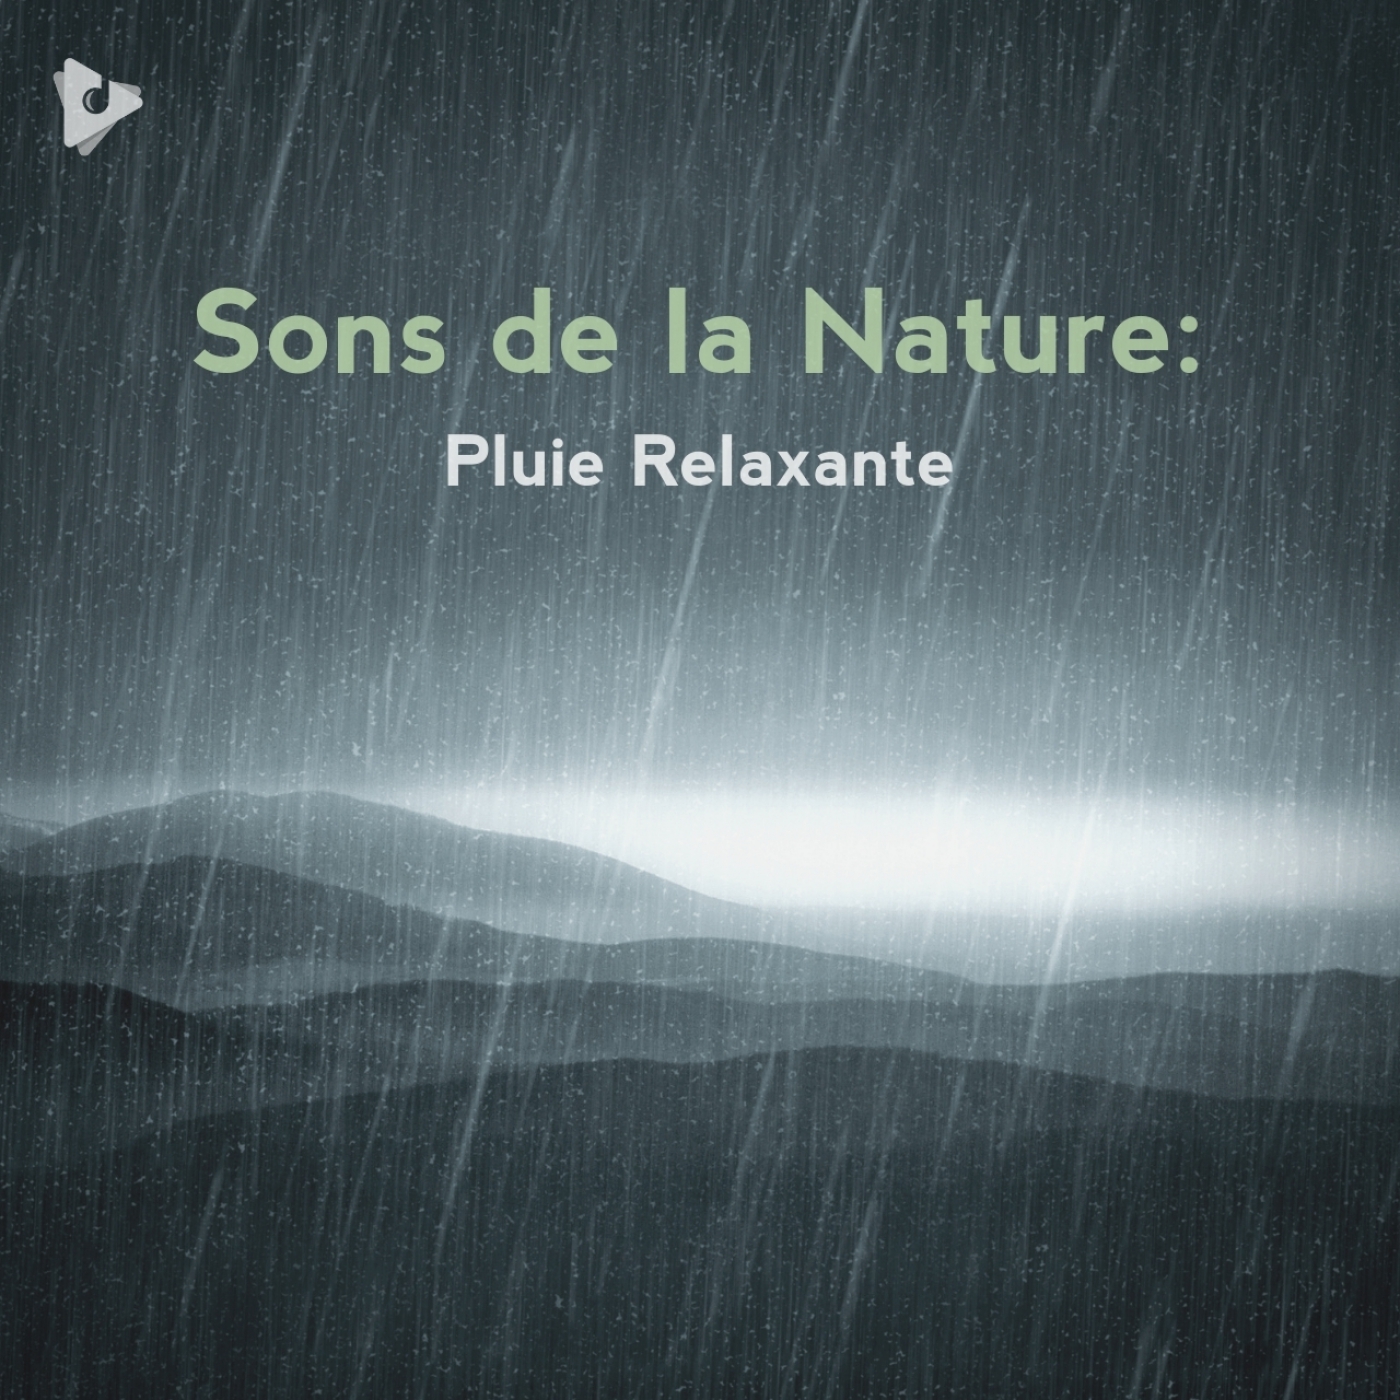 Sons de la Nature: Pluie Relaxante